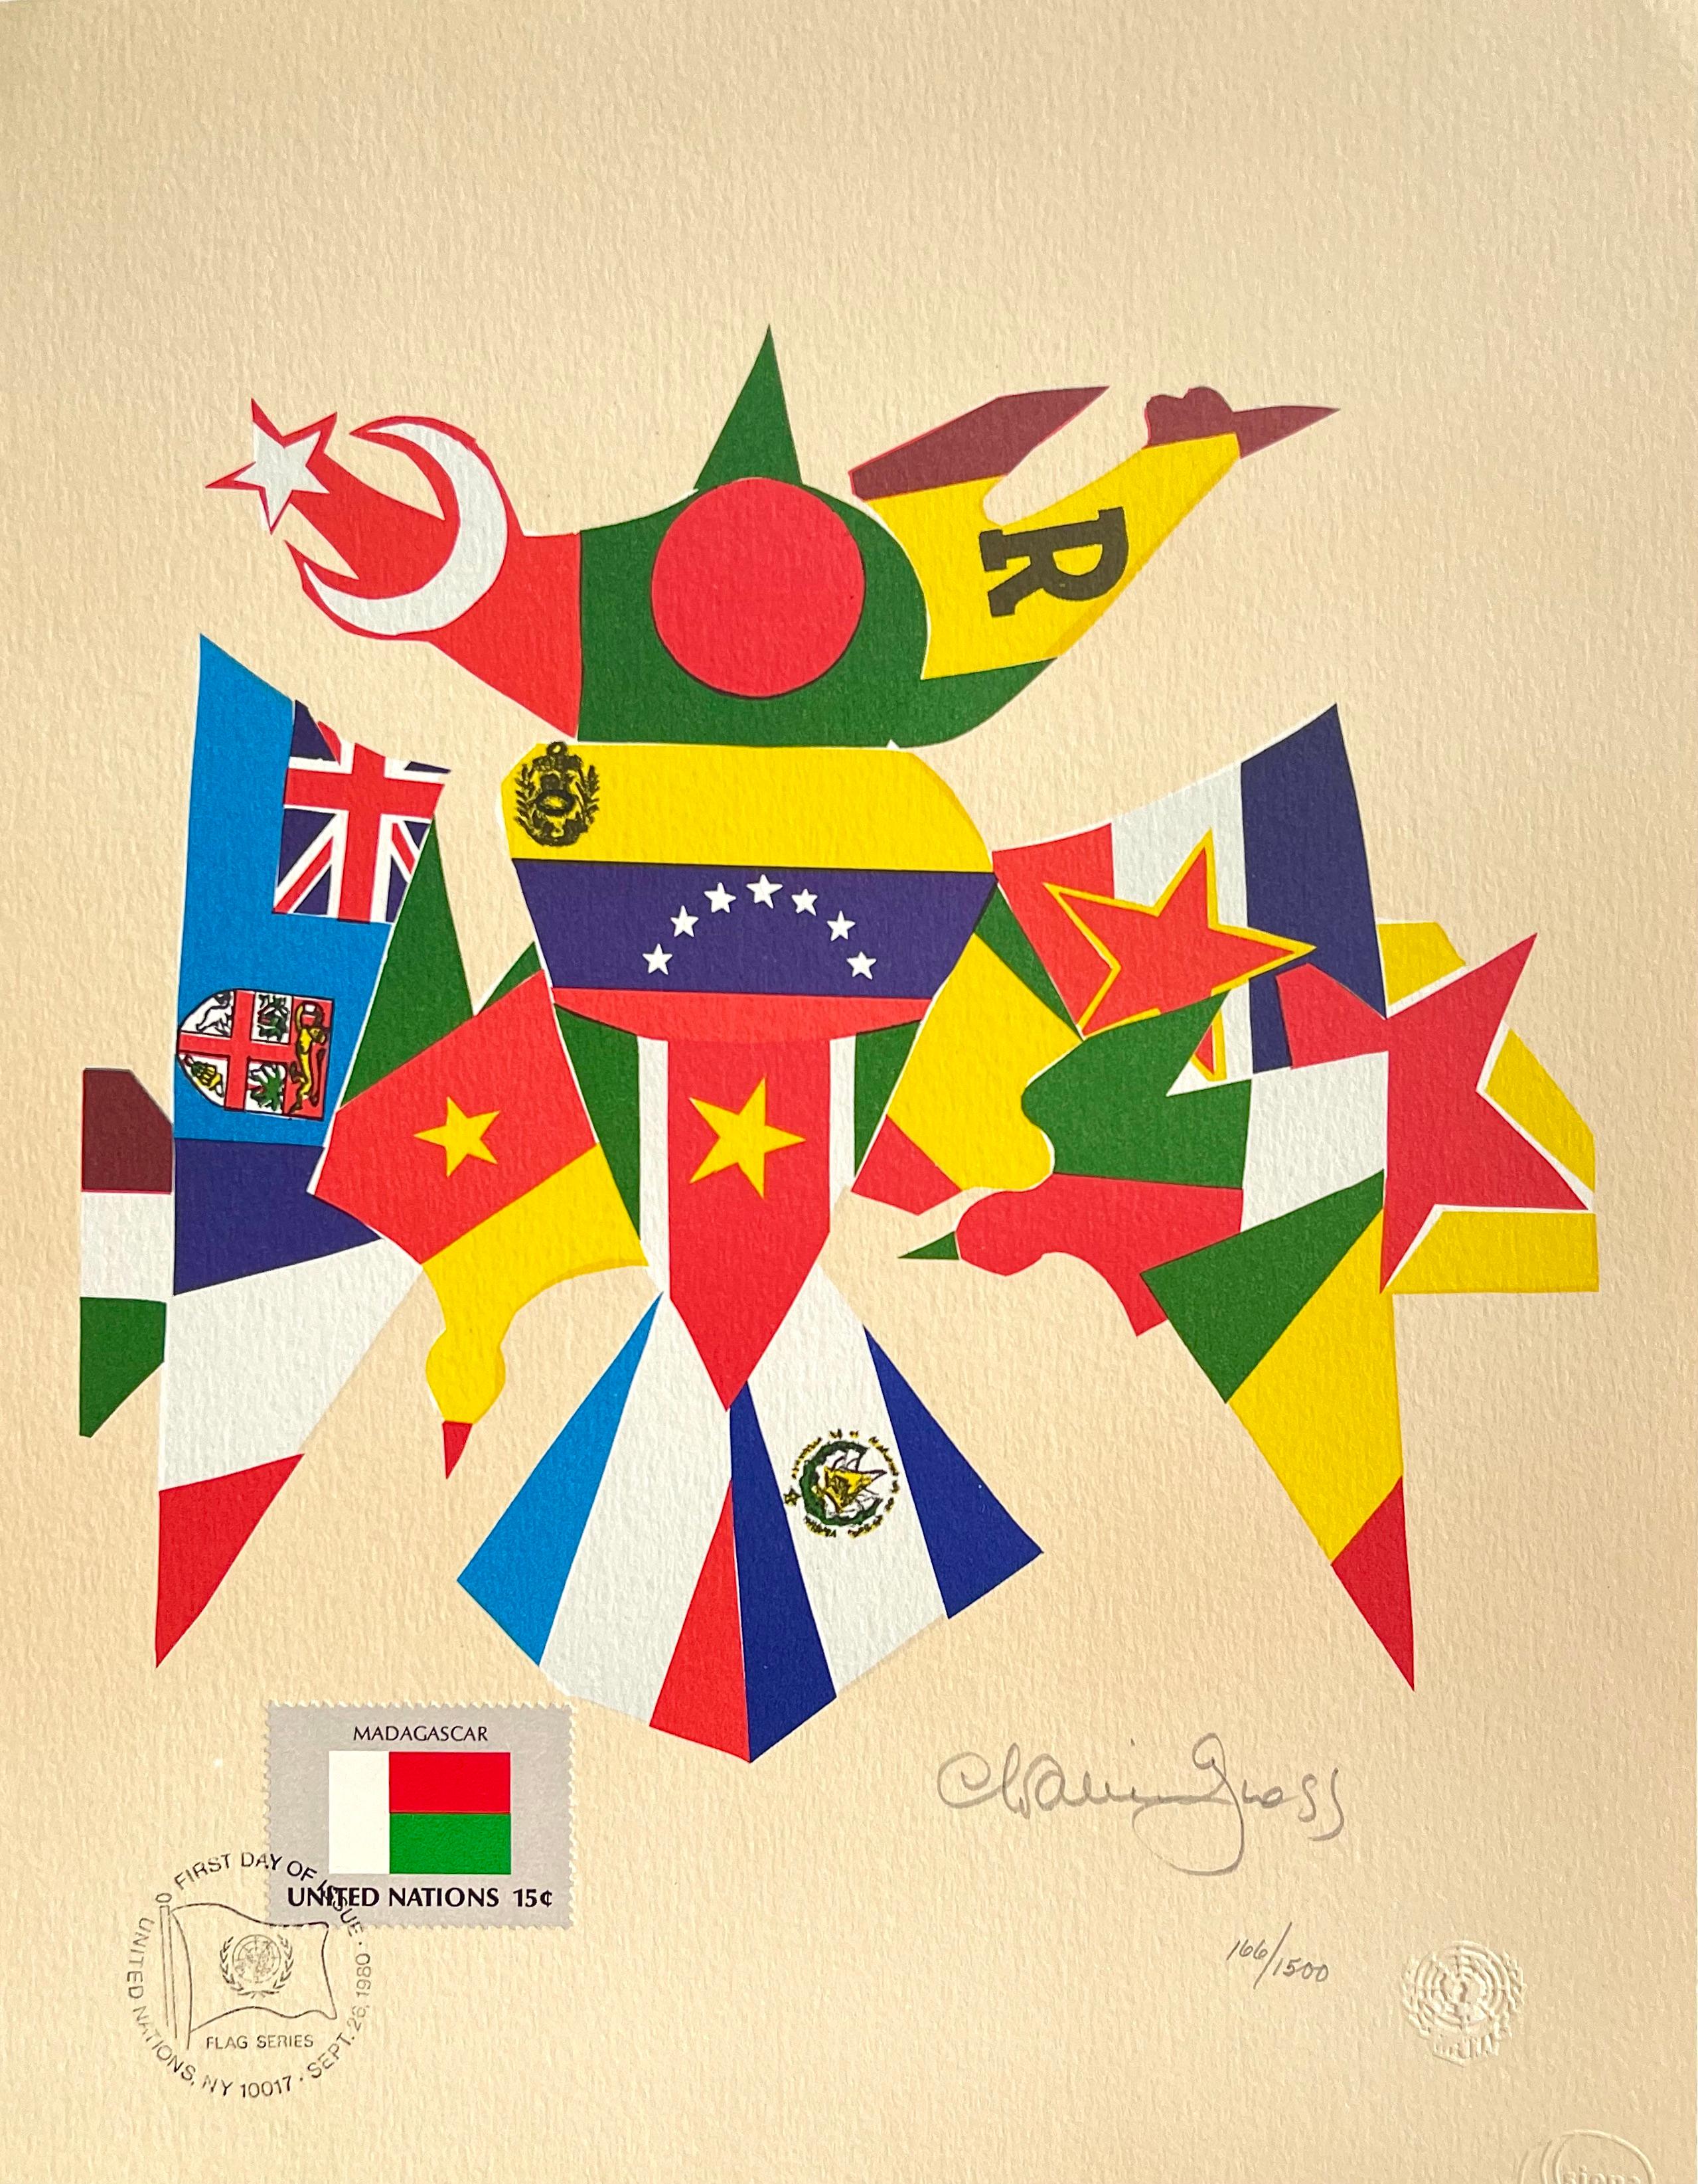 FLAG SERIES 1980 est une lithographie aux couleurs vives de l'artiste/sculpteur américain Chaim Gross, imprimée en 10 couleurs sur du papier d'archivage Arches. FLAG SERIES 1980 représente une image graphique audacieuse composée de segments de